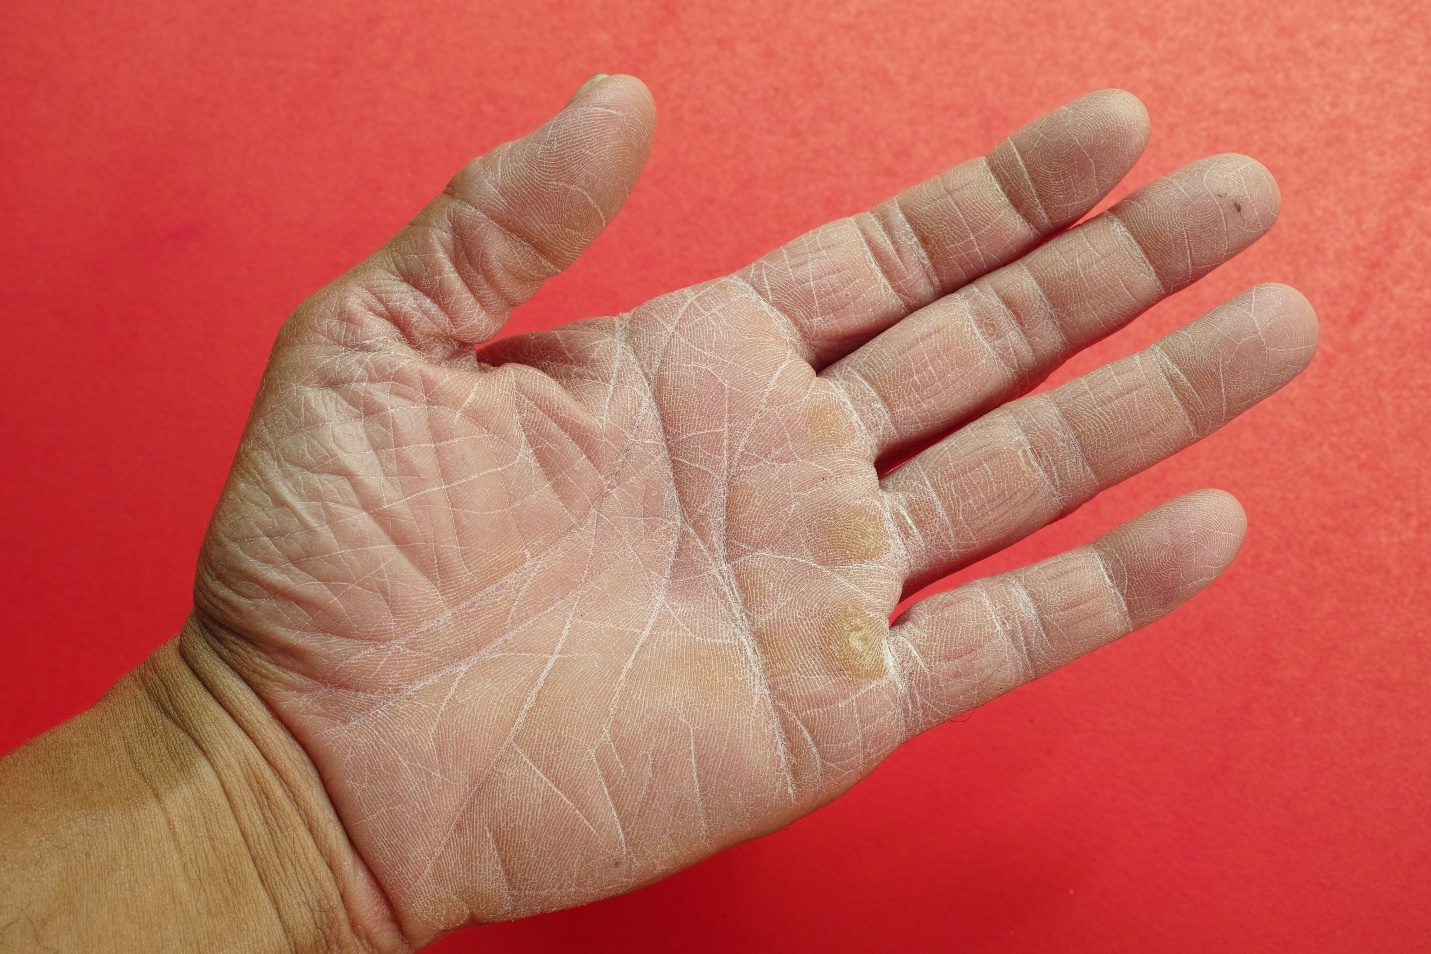 Артроз кистей рук - симптомы и лечение заболевания суставов